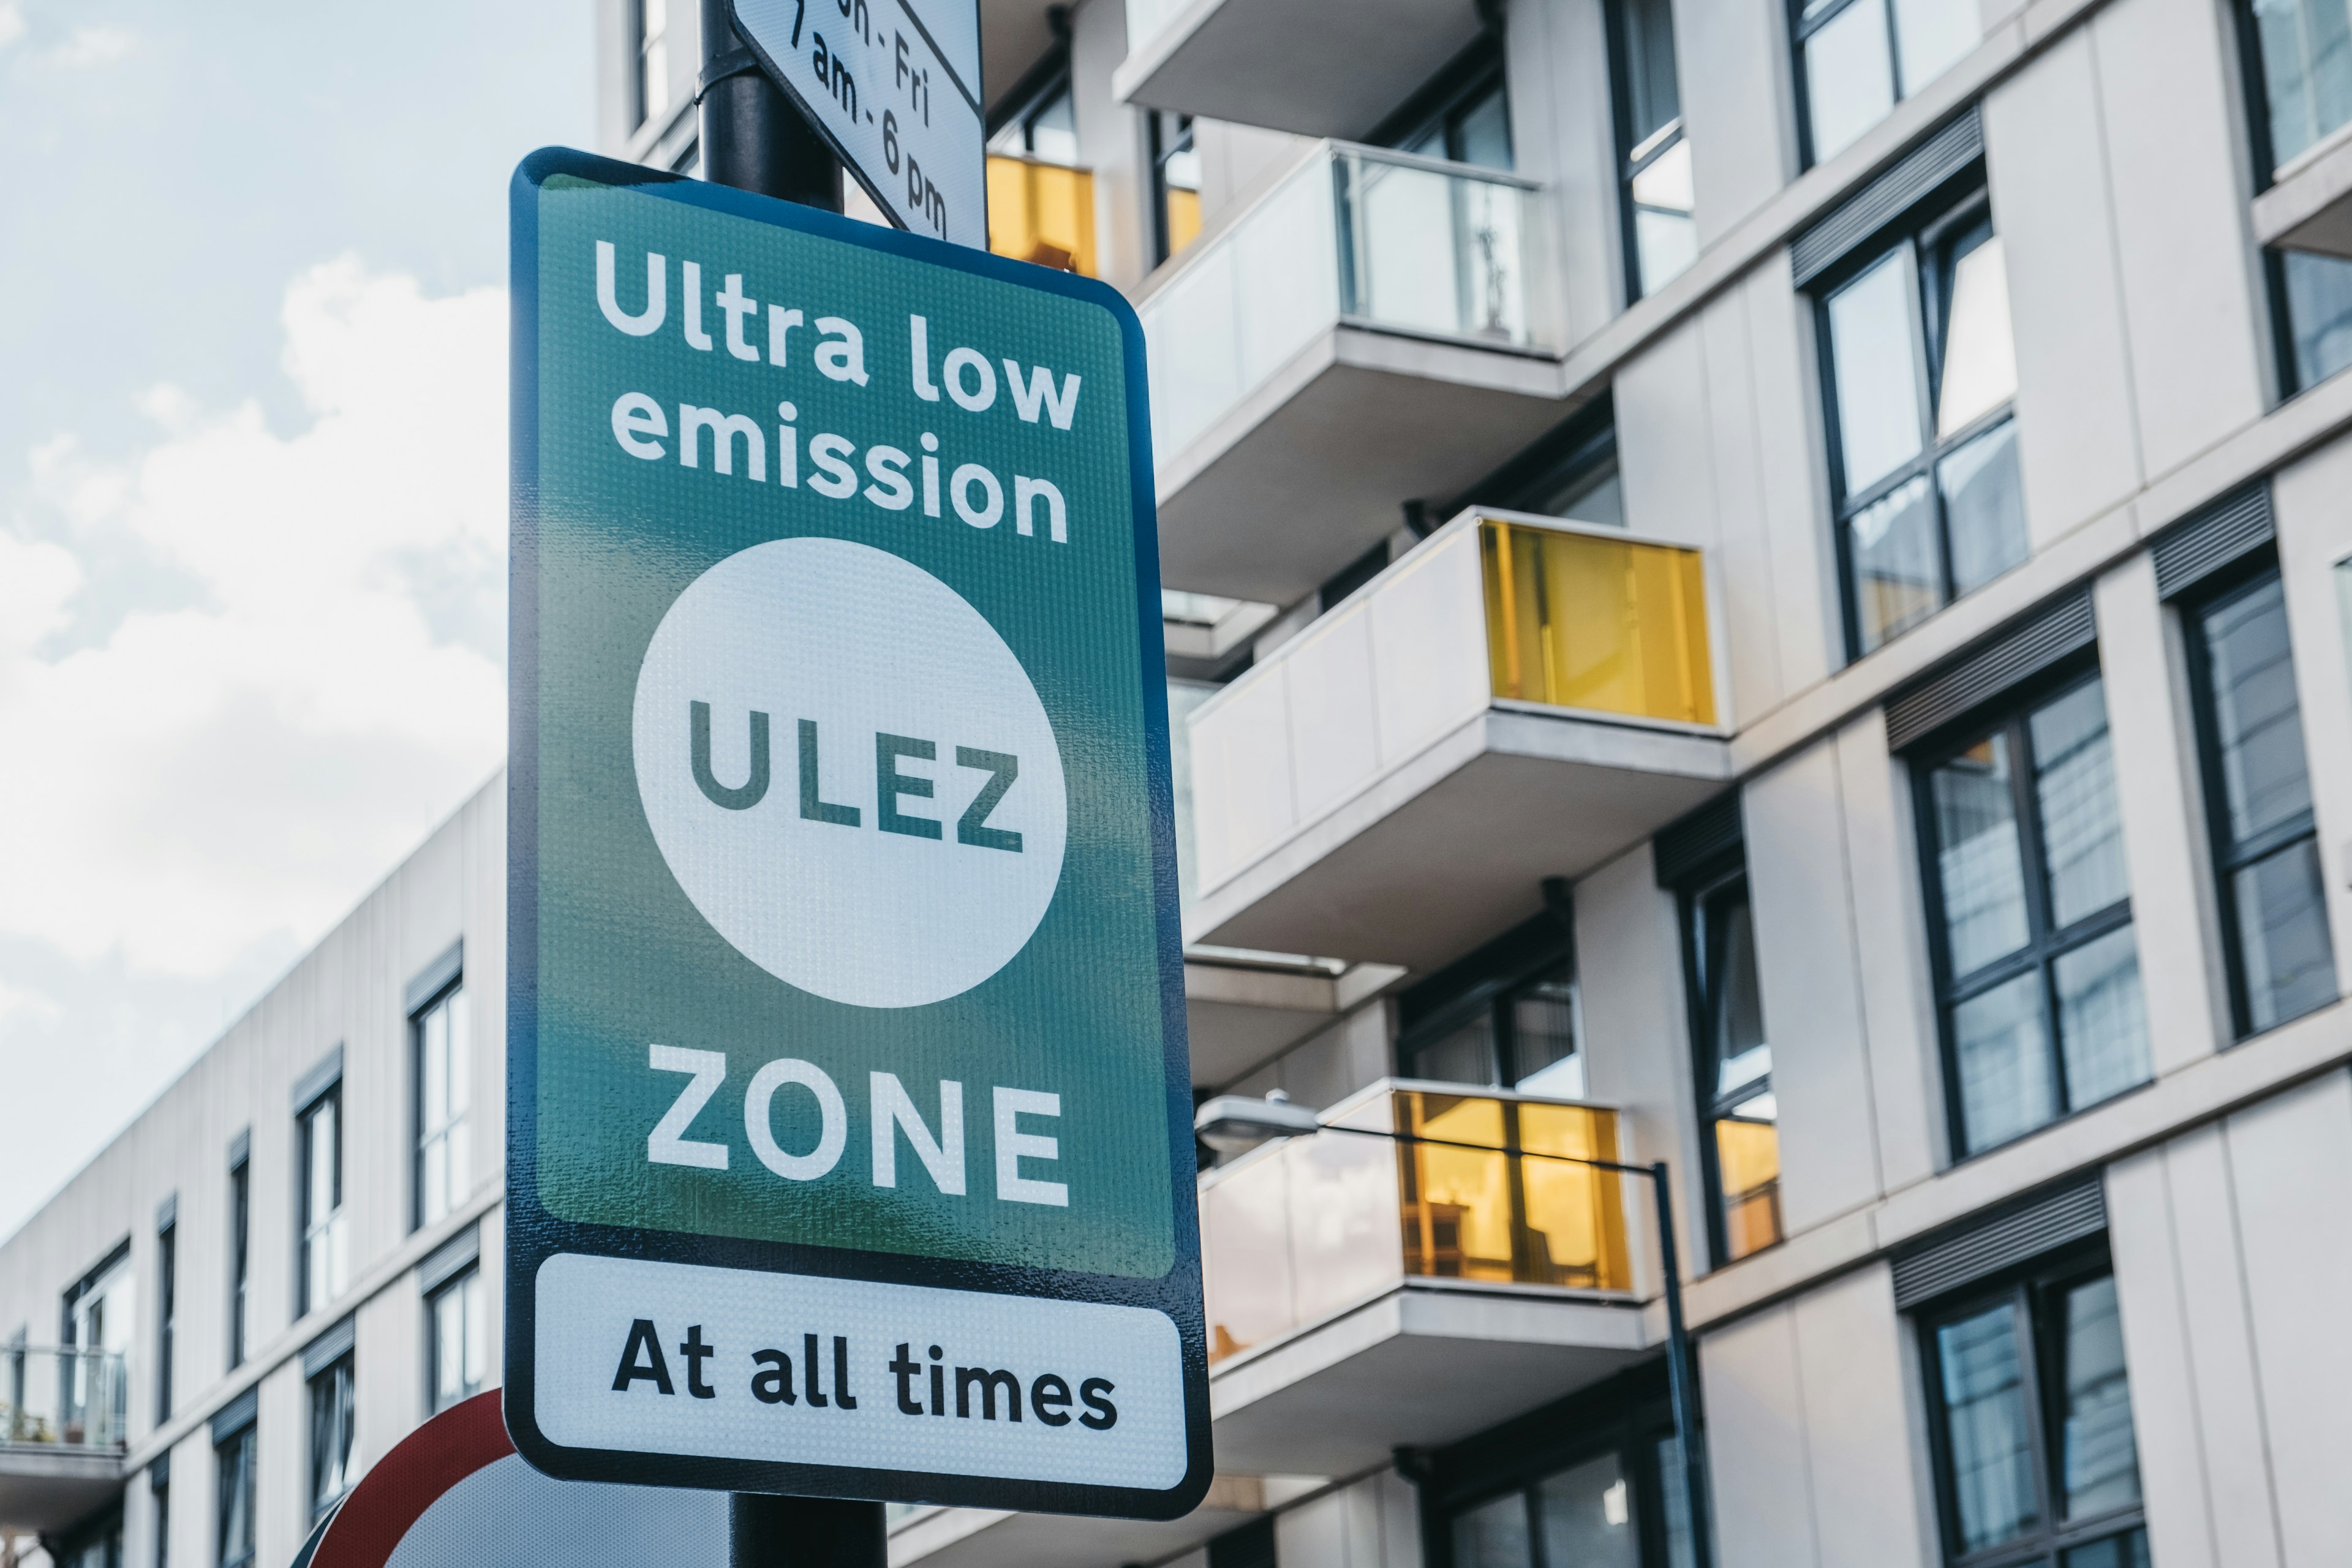 ULEZ signage indicating entry into zone